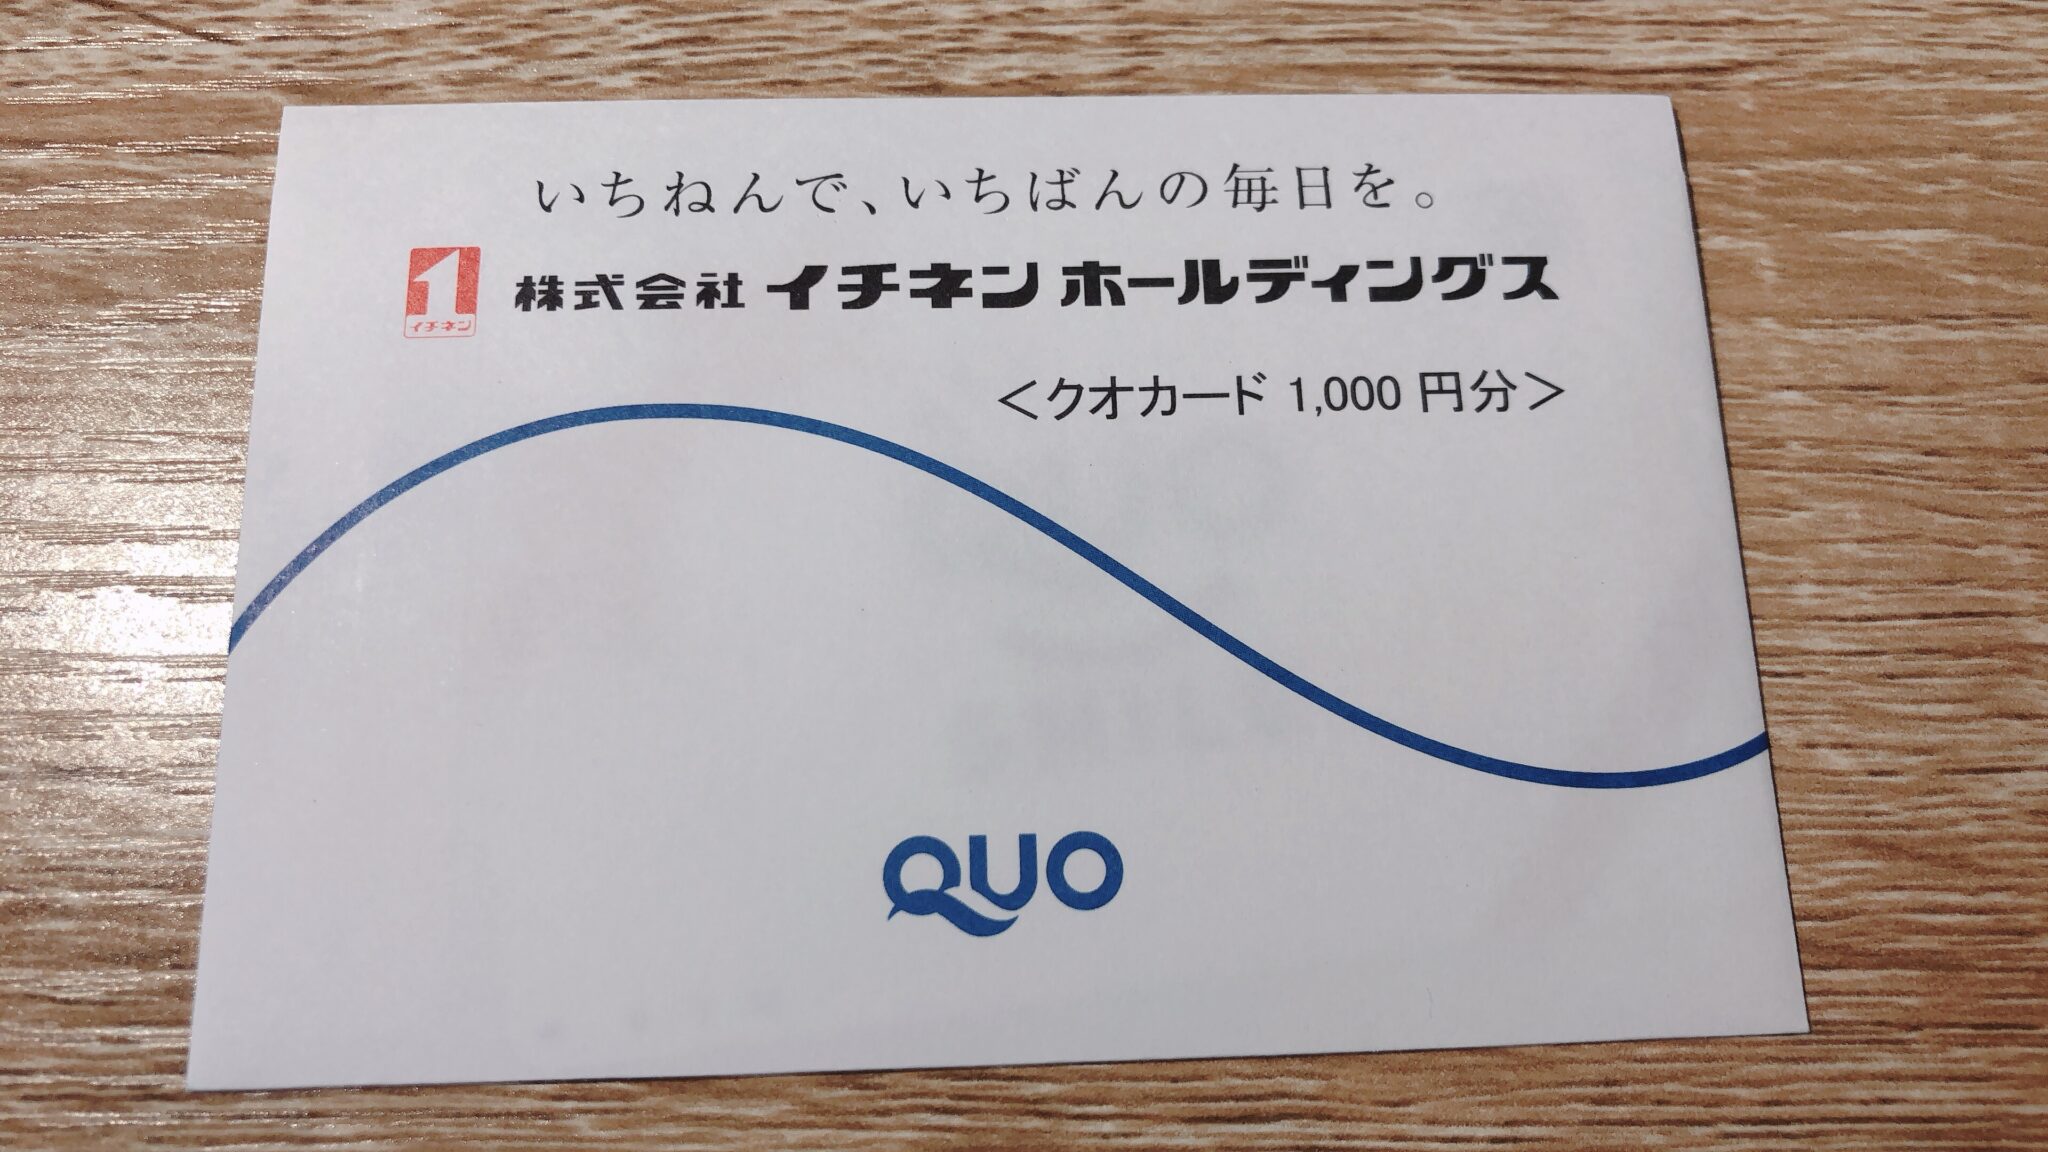 オートバックス 株主優待 20000円での+alummaq.com.br